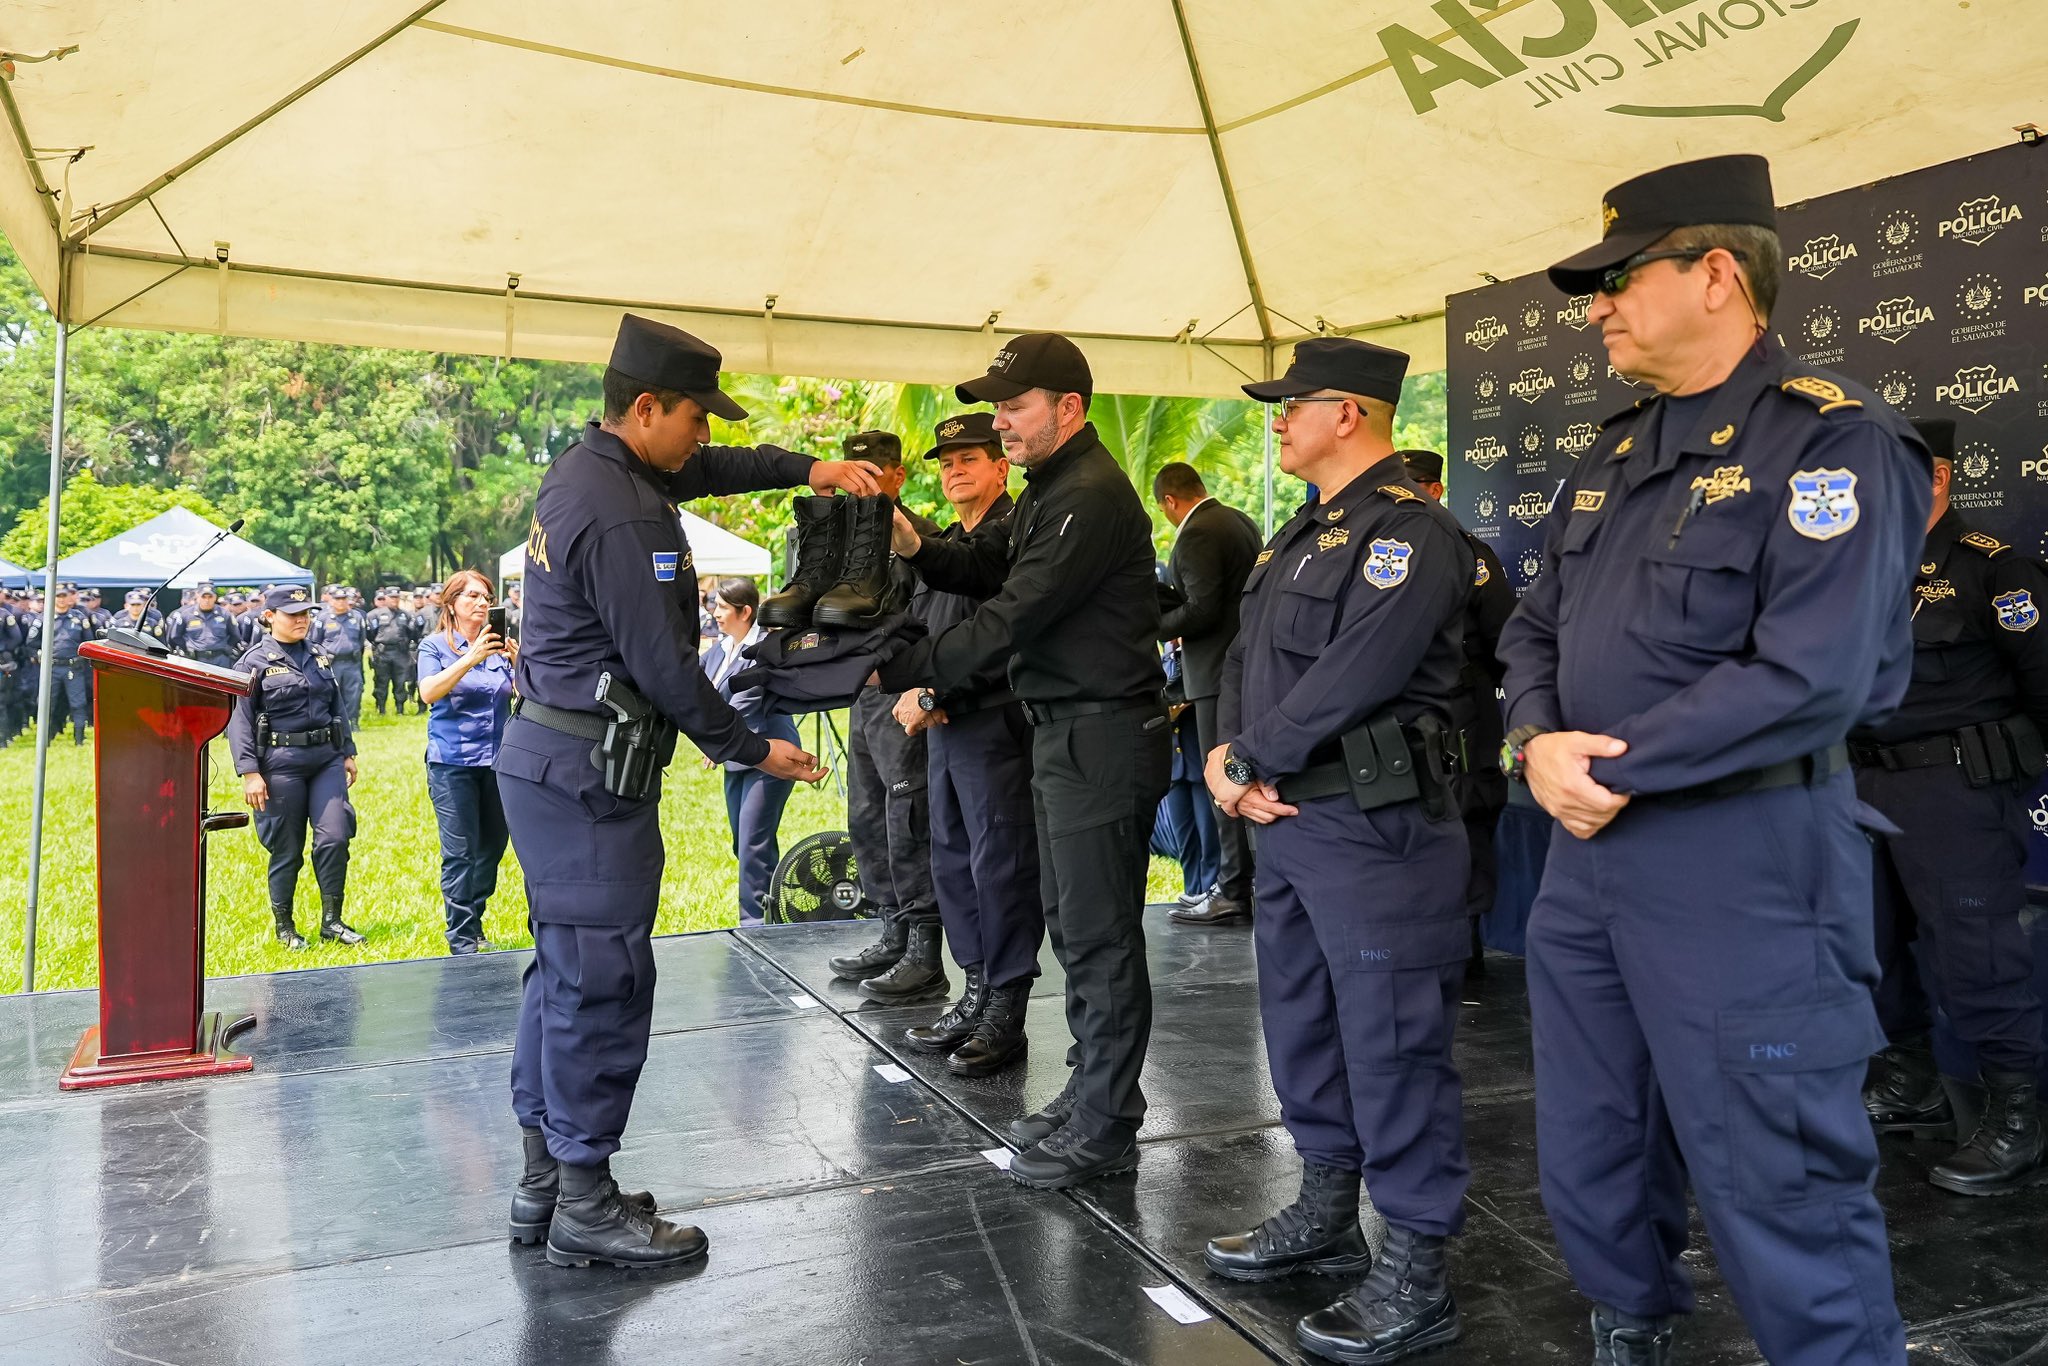 Unidades policiales de zona oriental reciben dotación de uniformes como parte del proceso de dignificación